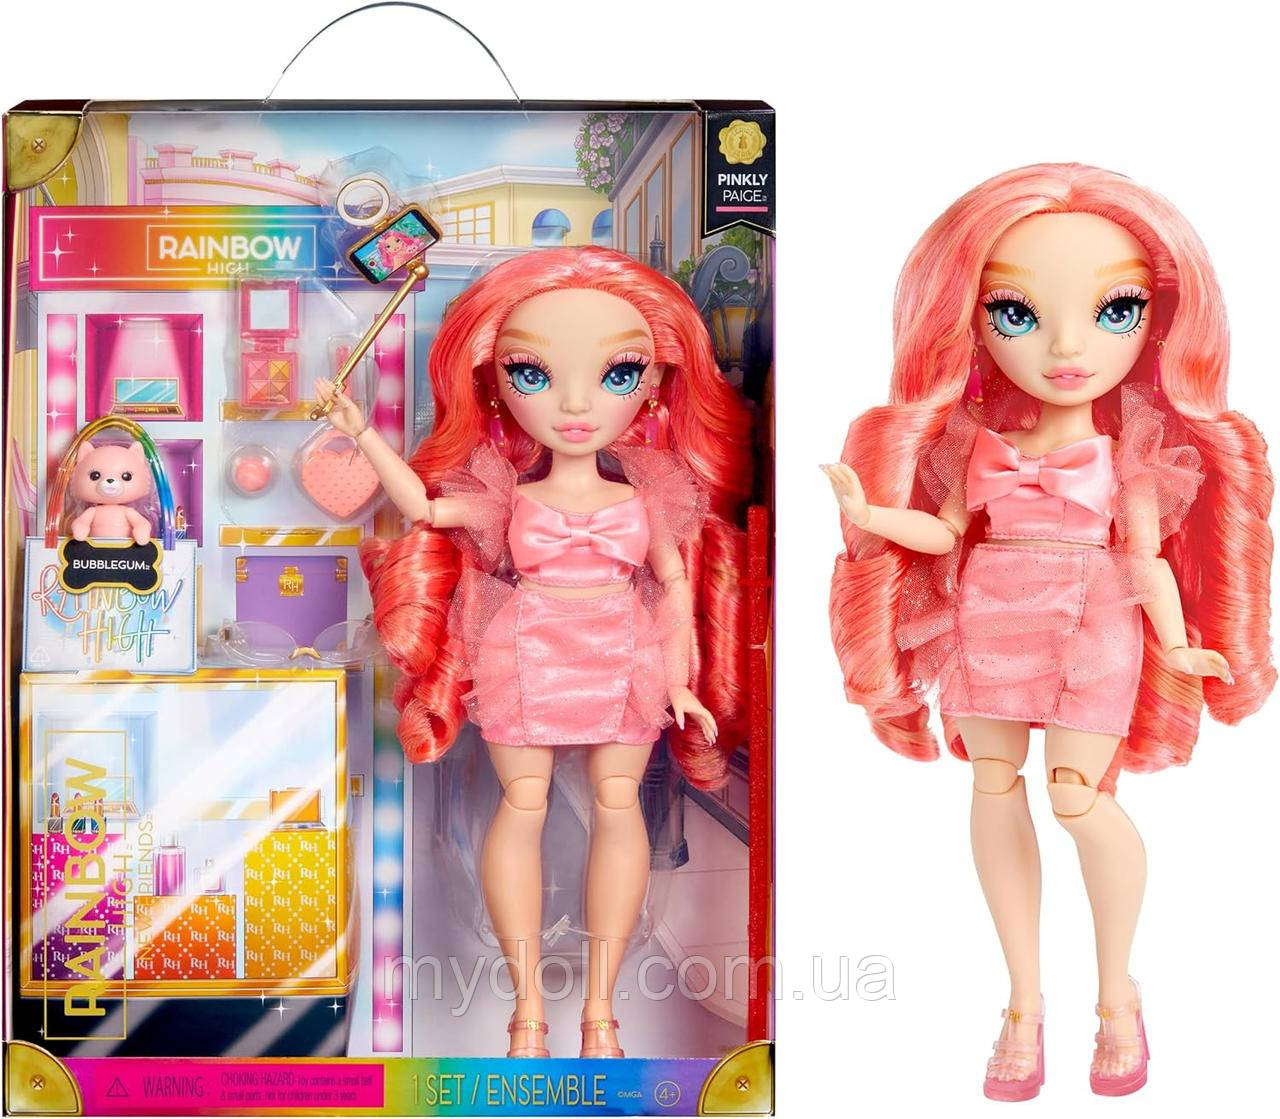 Лялька Рейнбоу Хай Нові друзі Пінклі Пейдж Rainbow High New Friends Pinkly Paige Doll 501923 MGA Оригінал